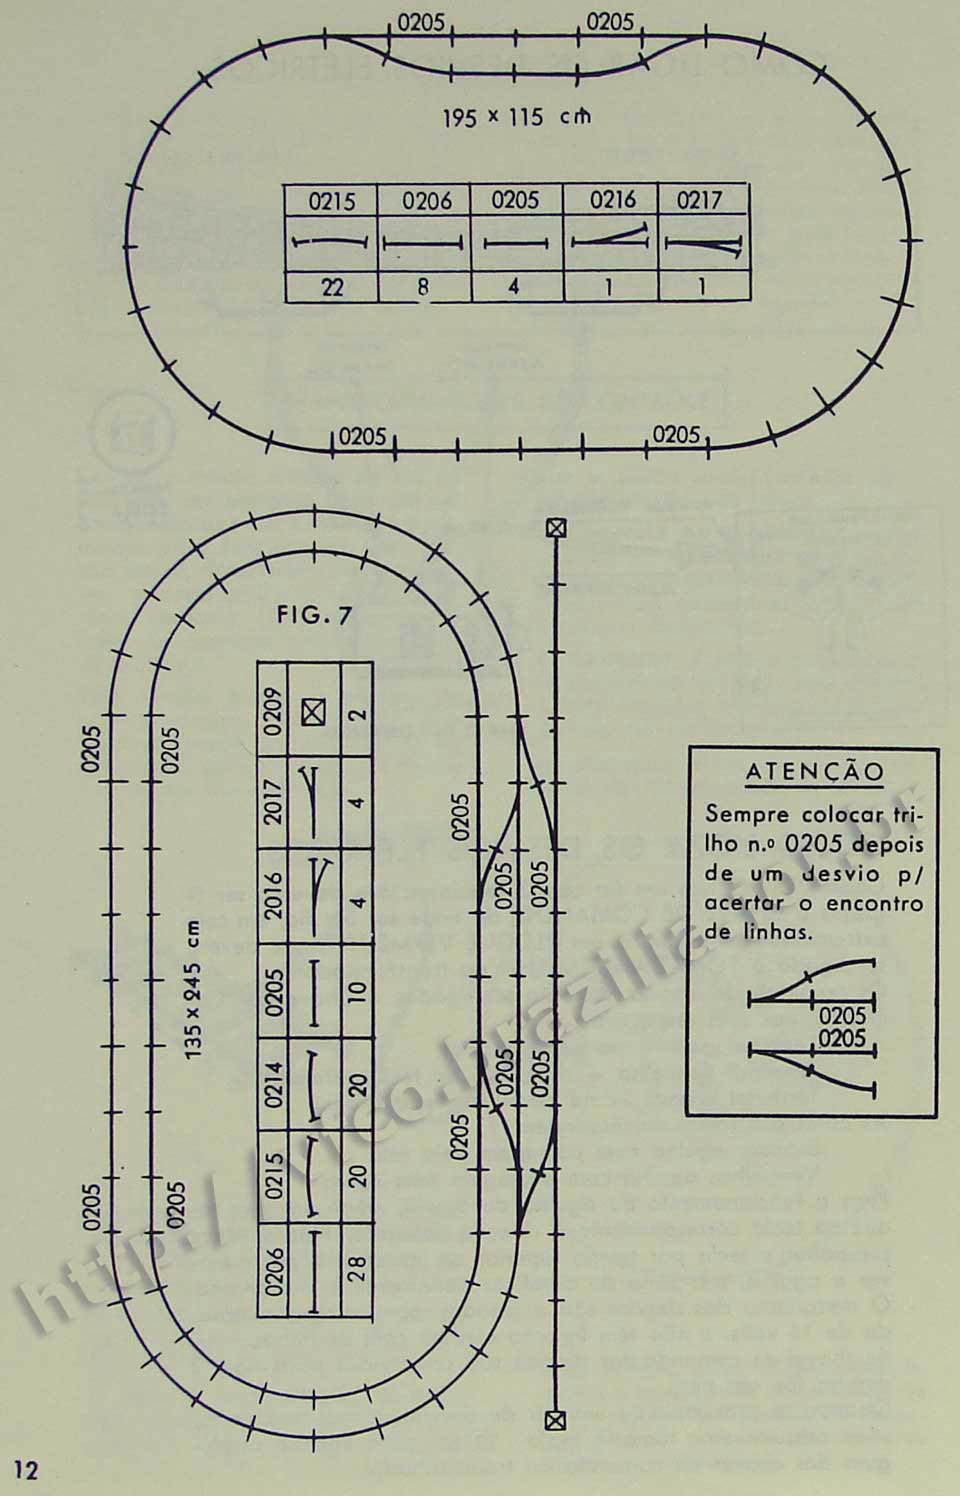 Traçados básicos com os trilhos na Página 12 do manual "Como montar e operar seu trem elétrico Atma" para maquete de ferreomodelismo